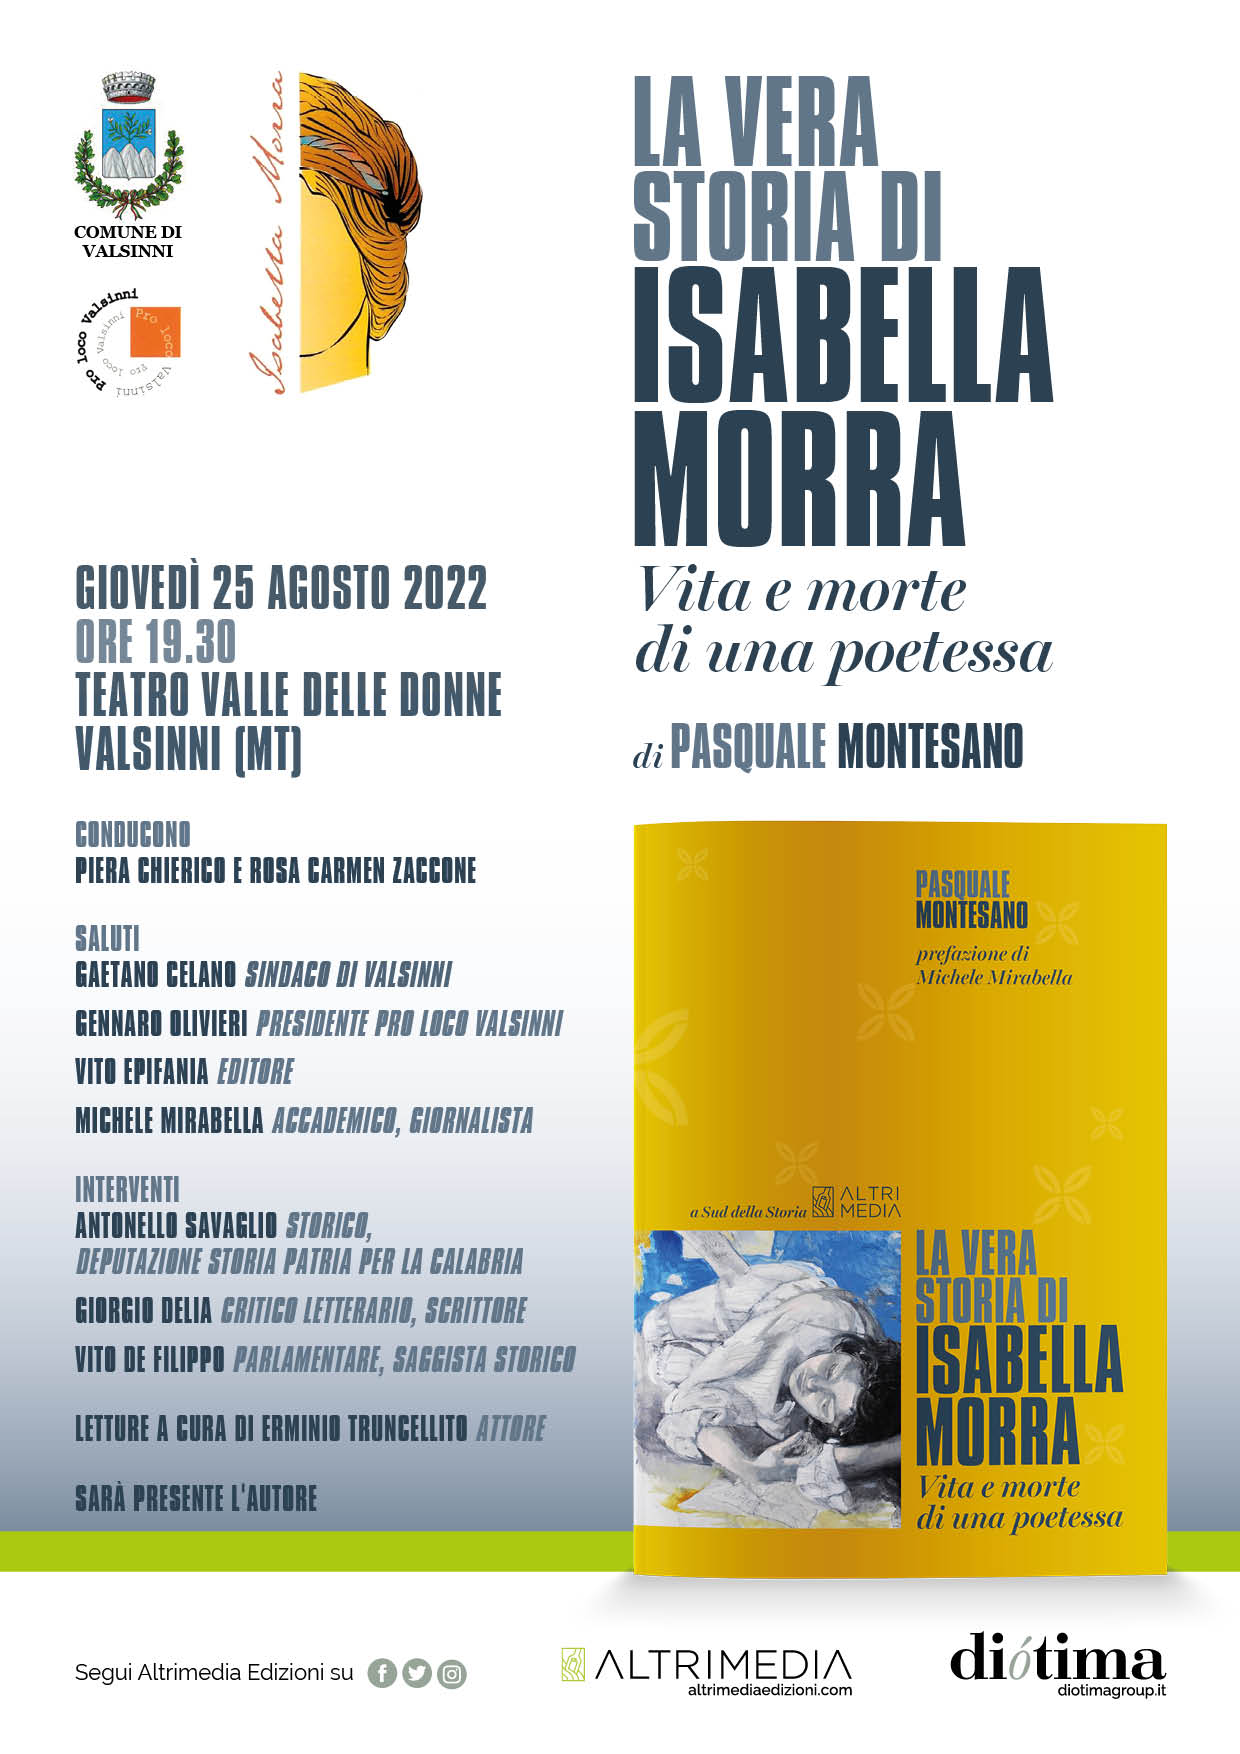 Il 25 agosto Pasquale Montesano presenta a Valsinni “La vera storia di Isabella Morra. Vita e morte di una poetessa”